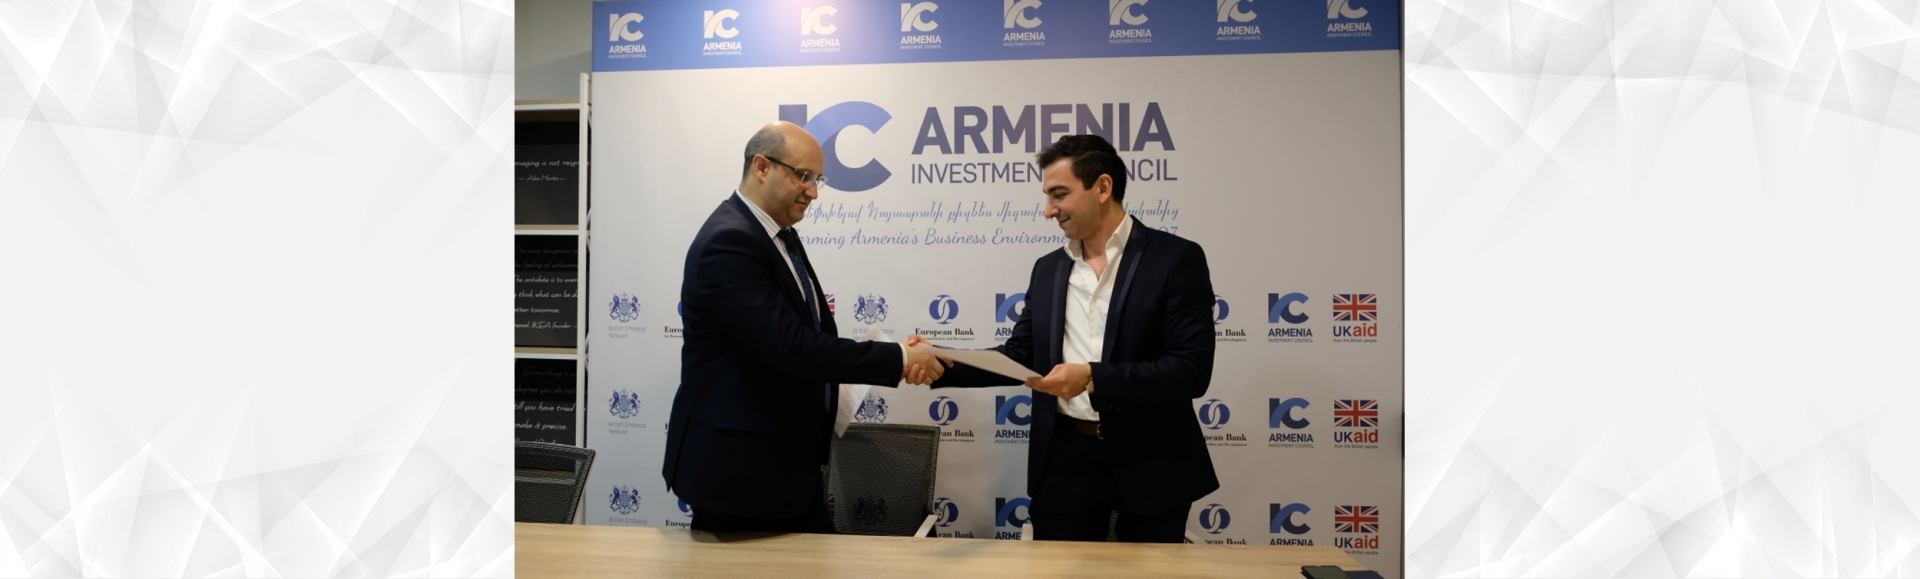 ՀԲՄ-ի և Հայաստանի ներդրումային խորհրդի միջև հաստատված համագործակցությունը կուղղվի գործարար միջավայրի բարելավմանը